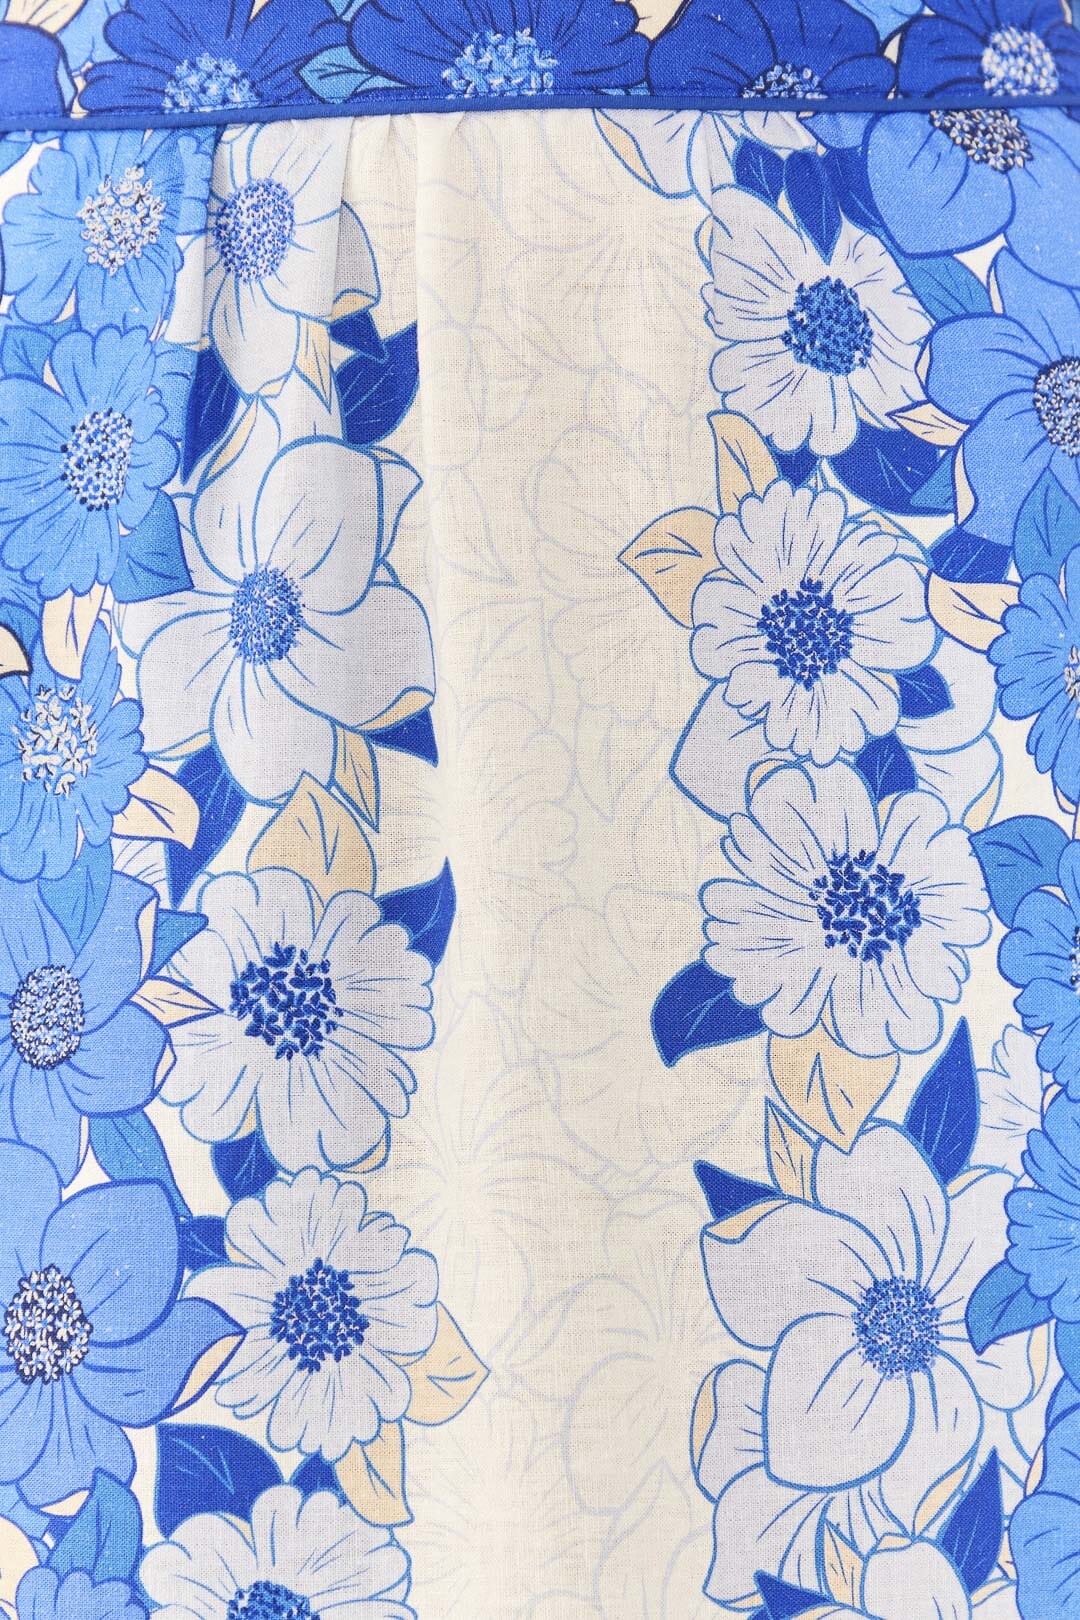 Blue Flower Stripes Midi Skirt